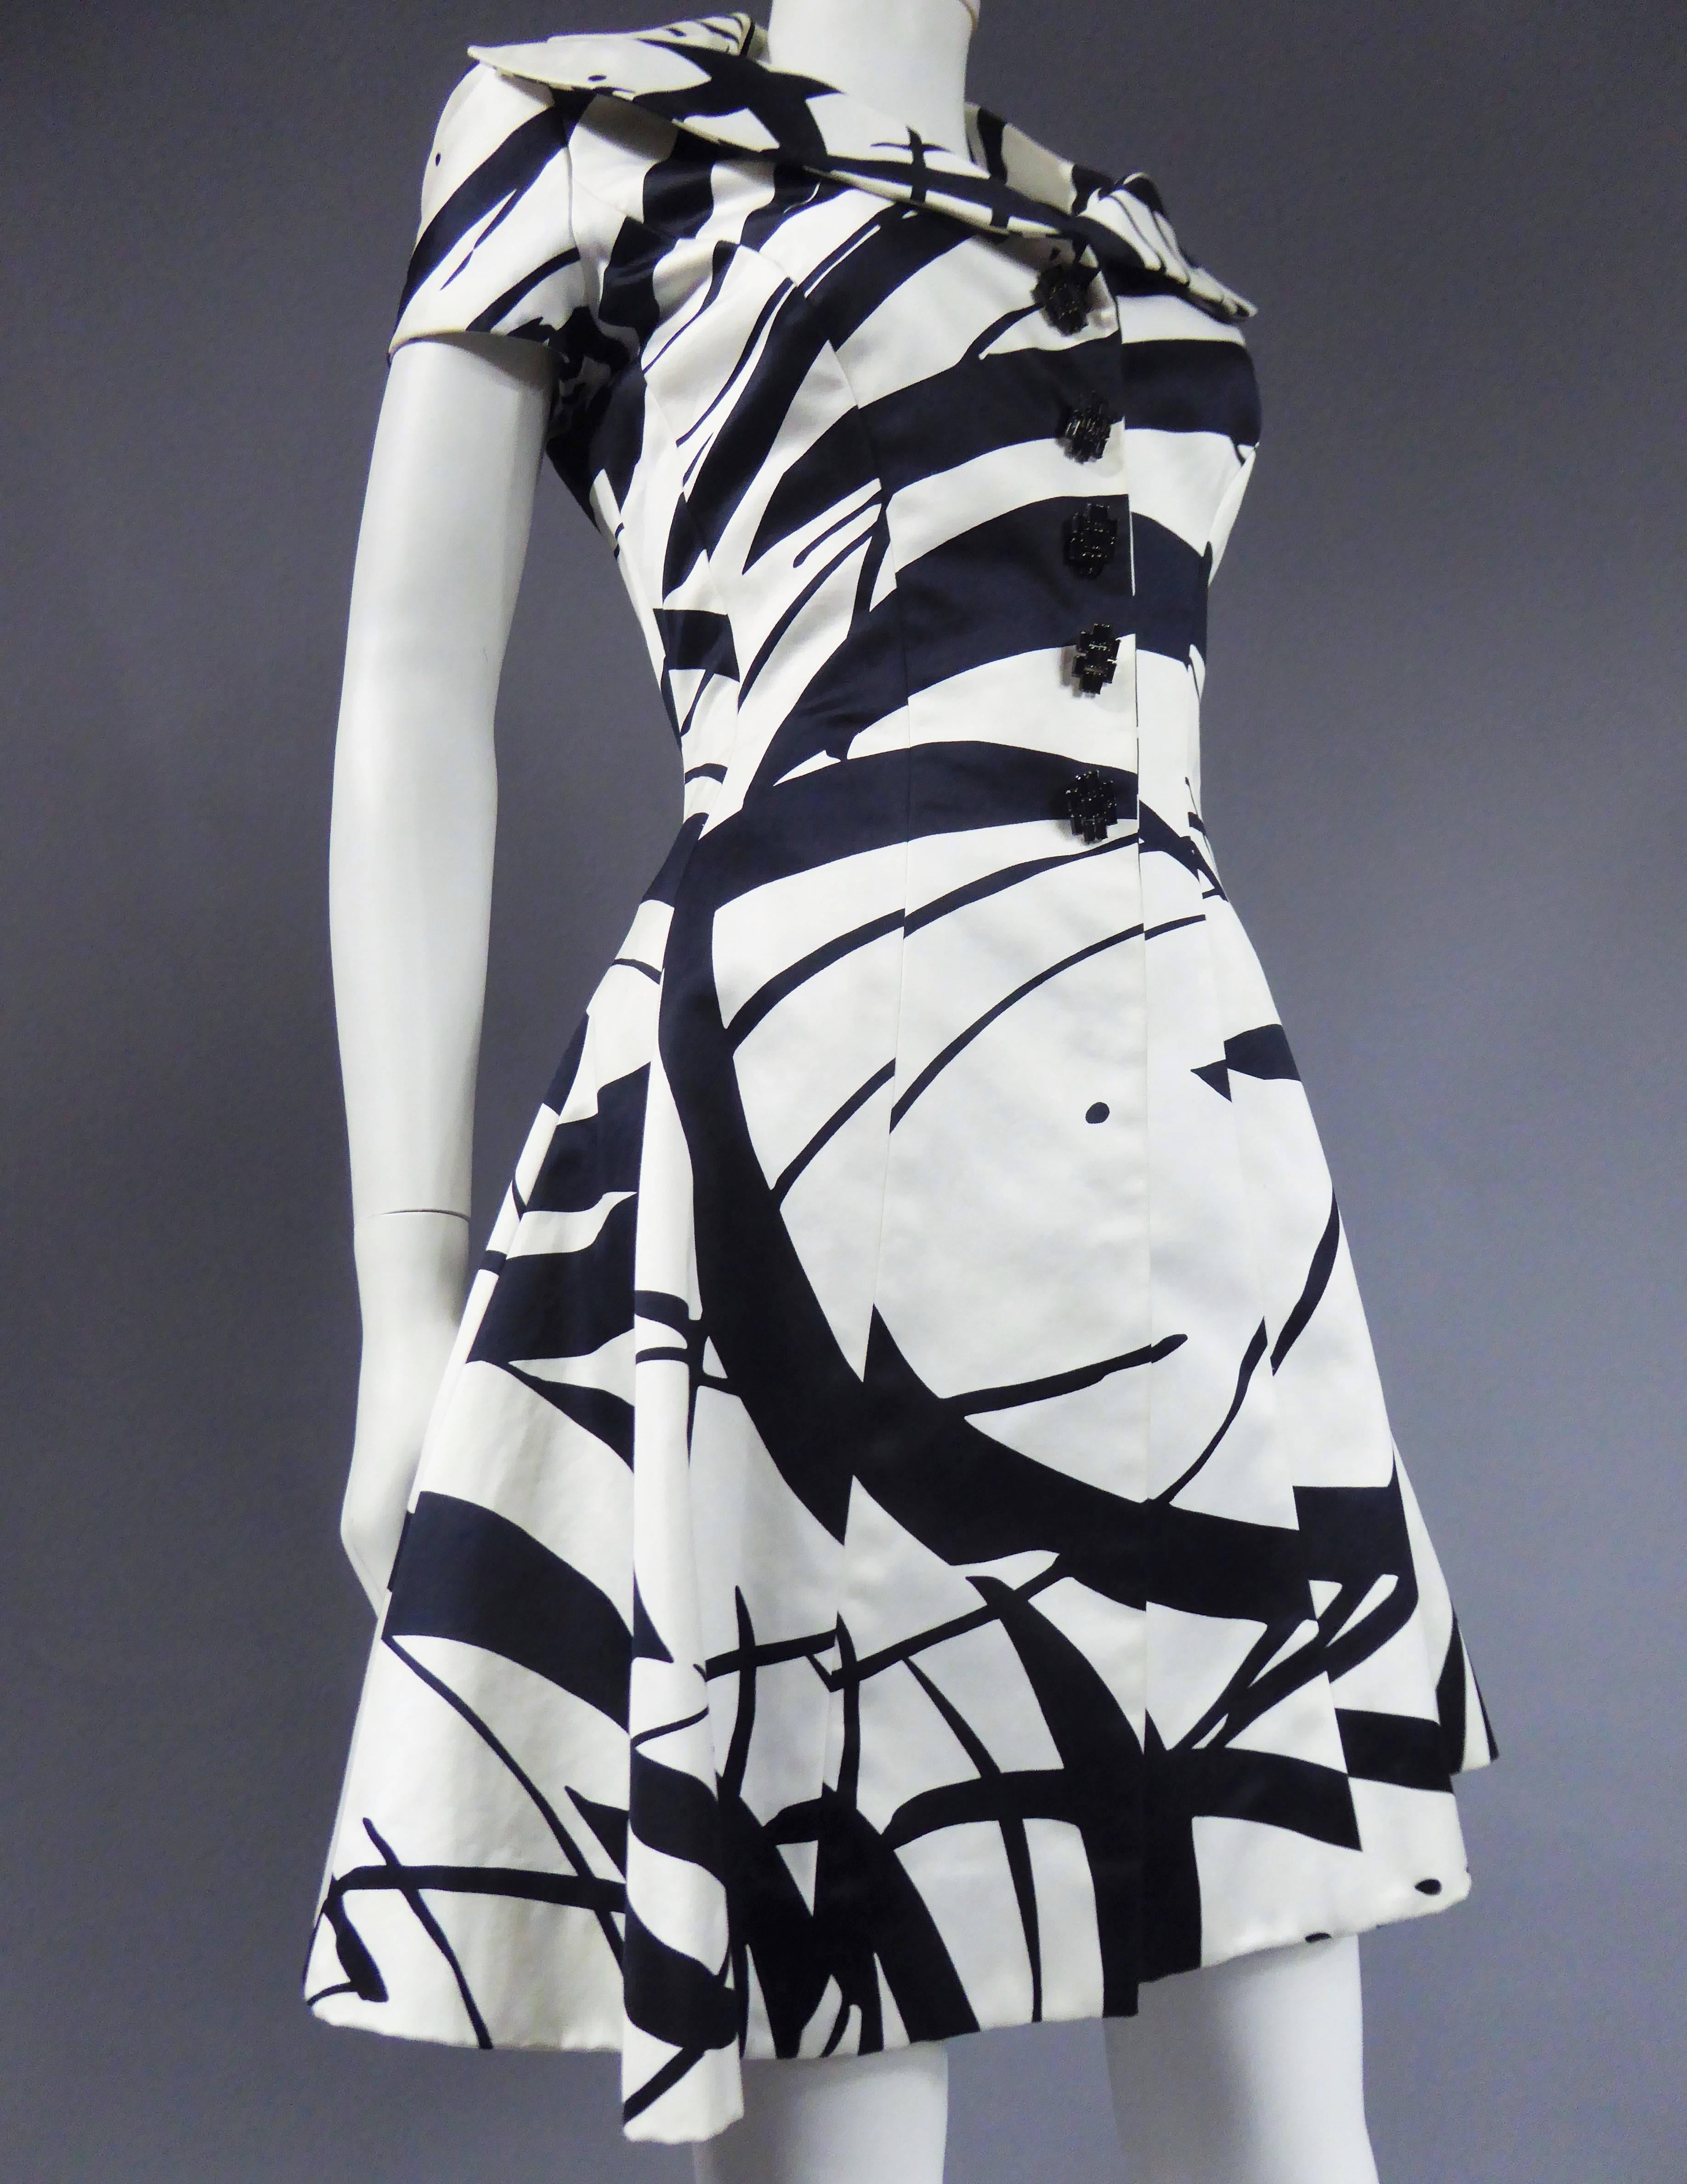 Ca. 1985/1990

Frankreich

Ted Lapidus Kleid aus dickem bedrucktem Seidensatin. Künstlerische Grafik mit schwarzen Linien auf weißem Hintergrund, die dünne und große Pinselstriche imitieren. Schließt mit fünf schwarzen Kristall-Schmuckknöpfen, die